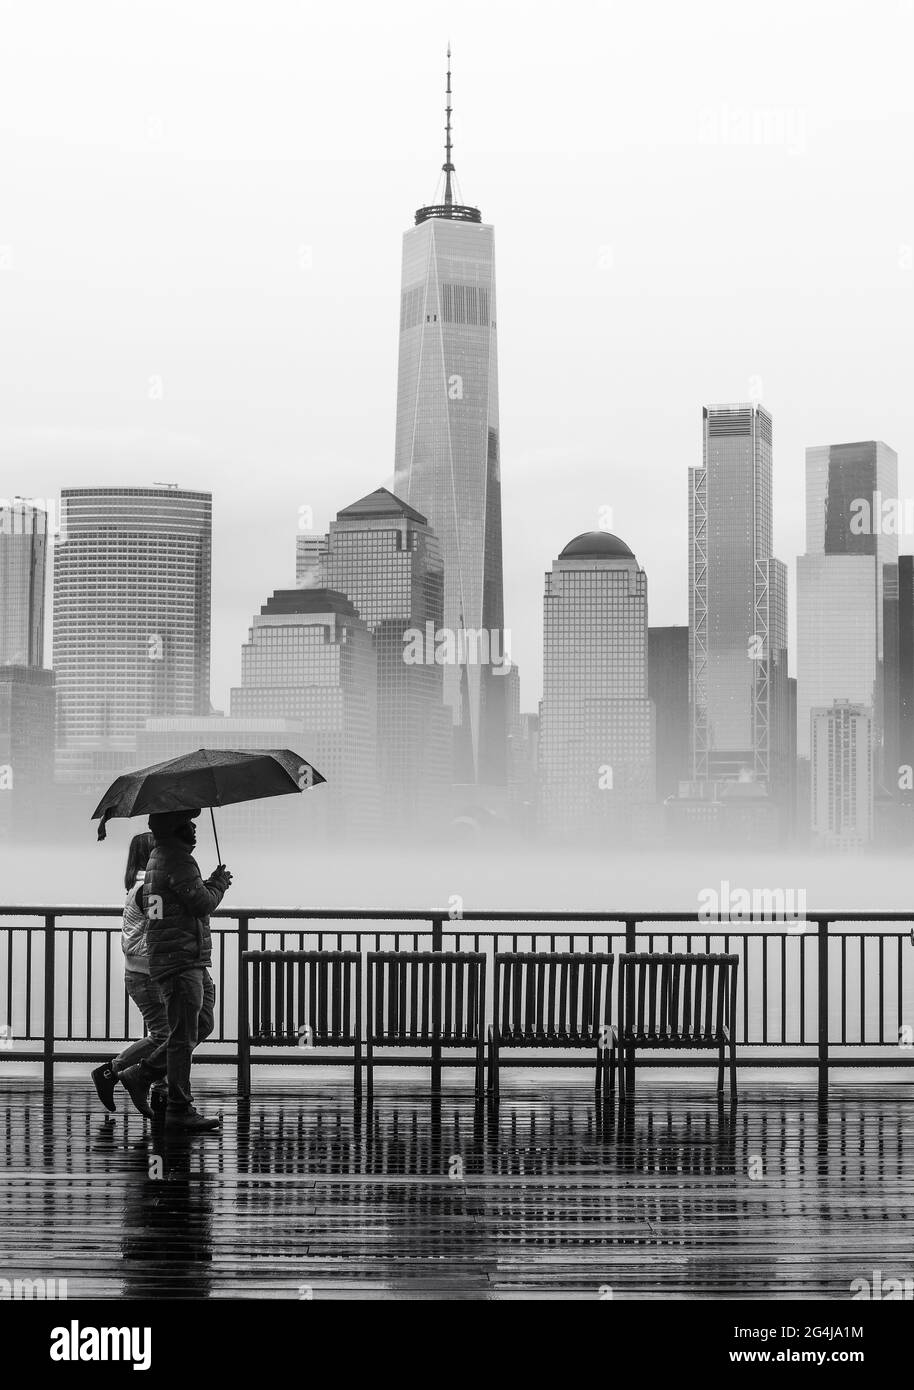 Ein Paar, das im Regen mit einem schwarz-weißen Regenschirm mit der Skyline  von NYC im Hintergrund läuft Stockfotografie - Alamy